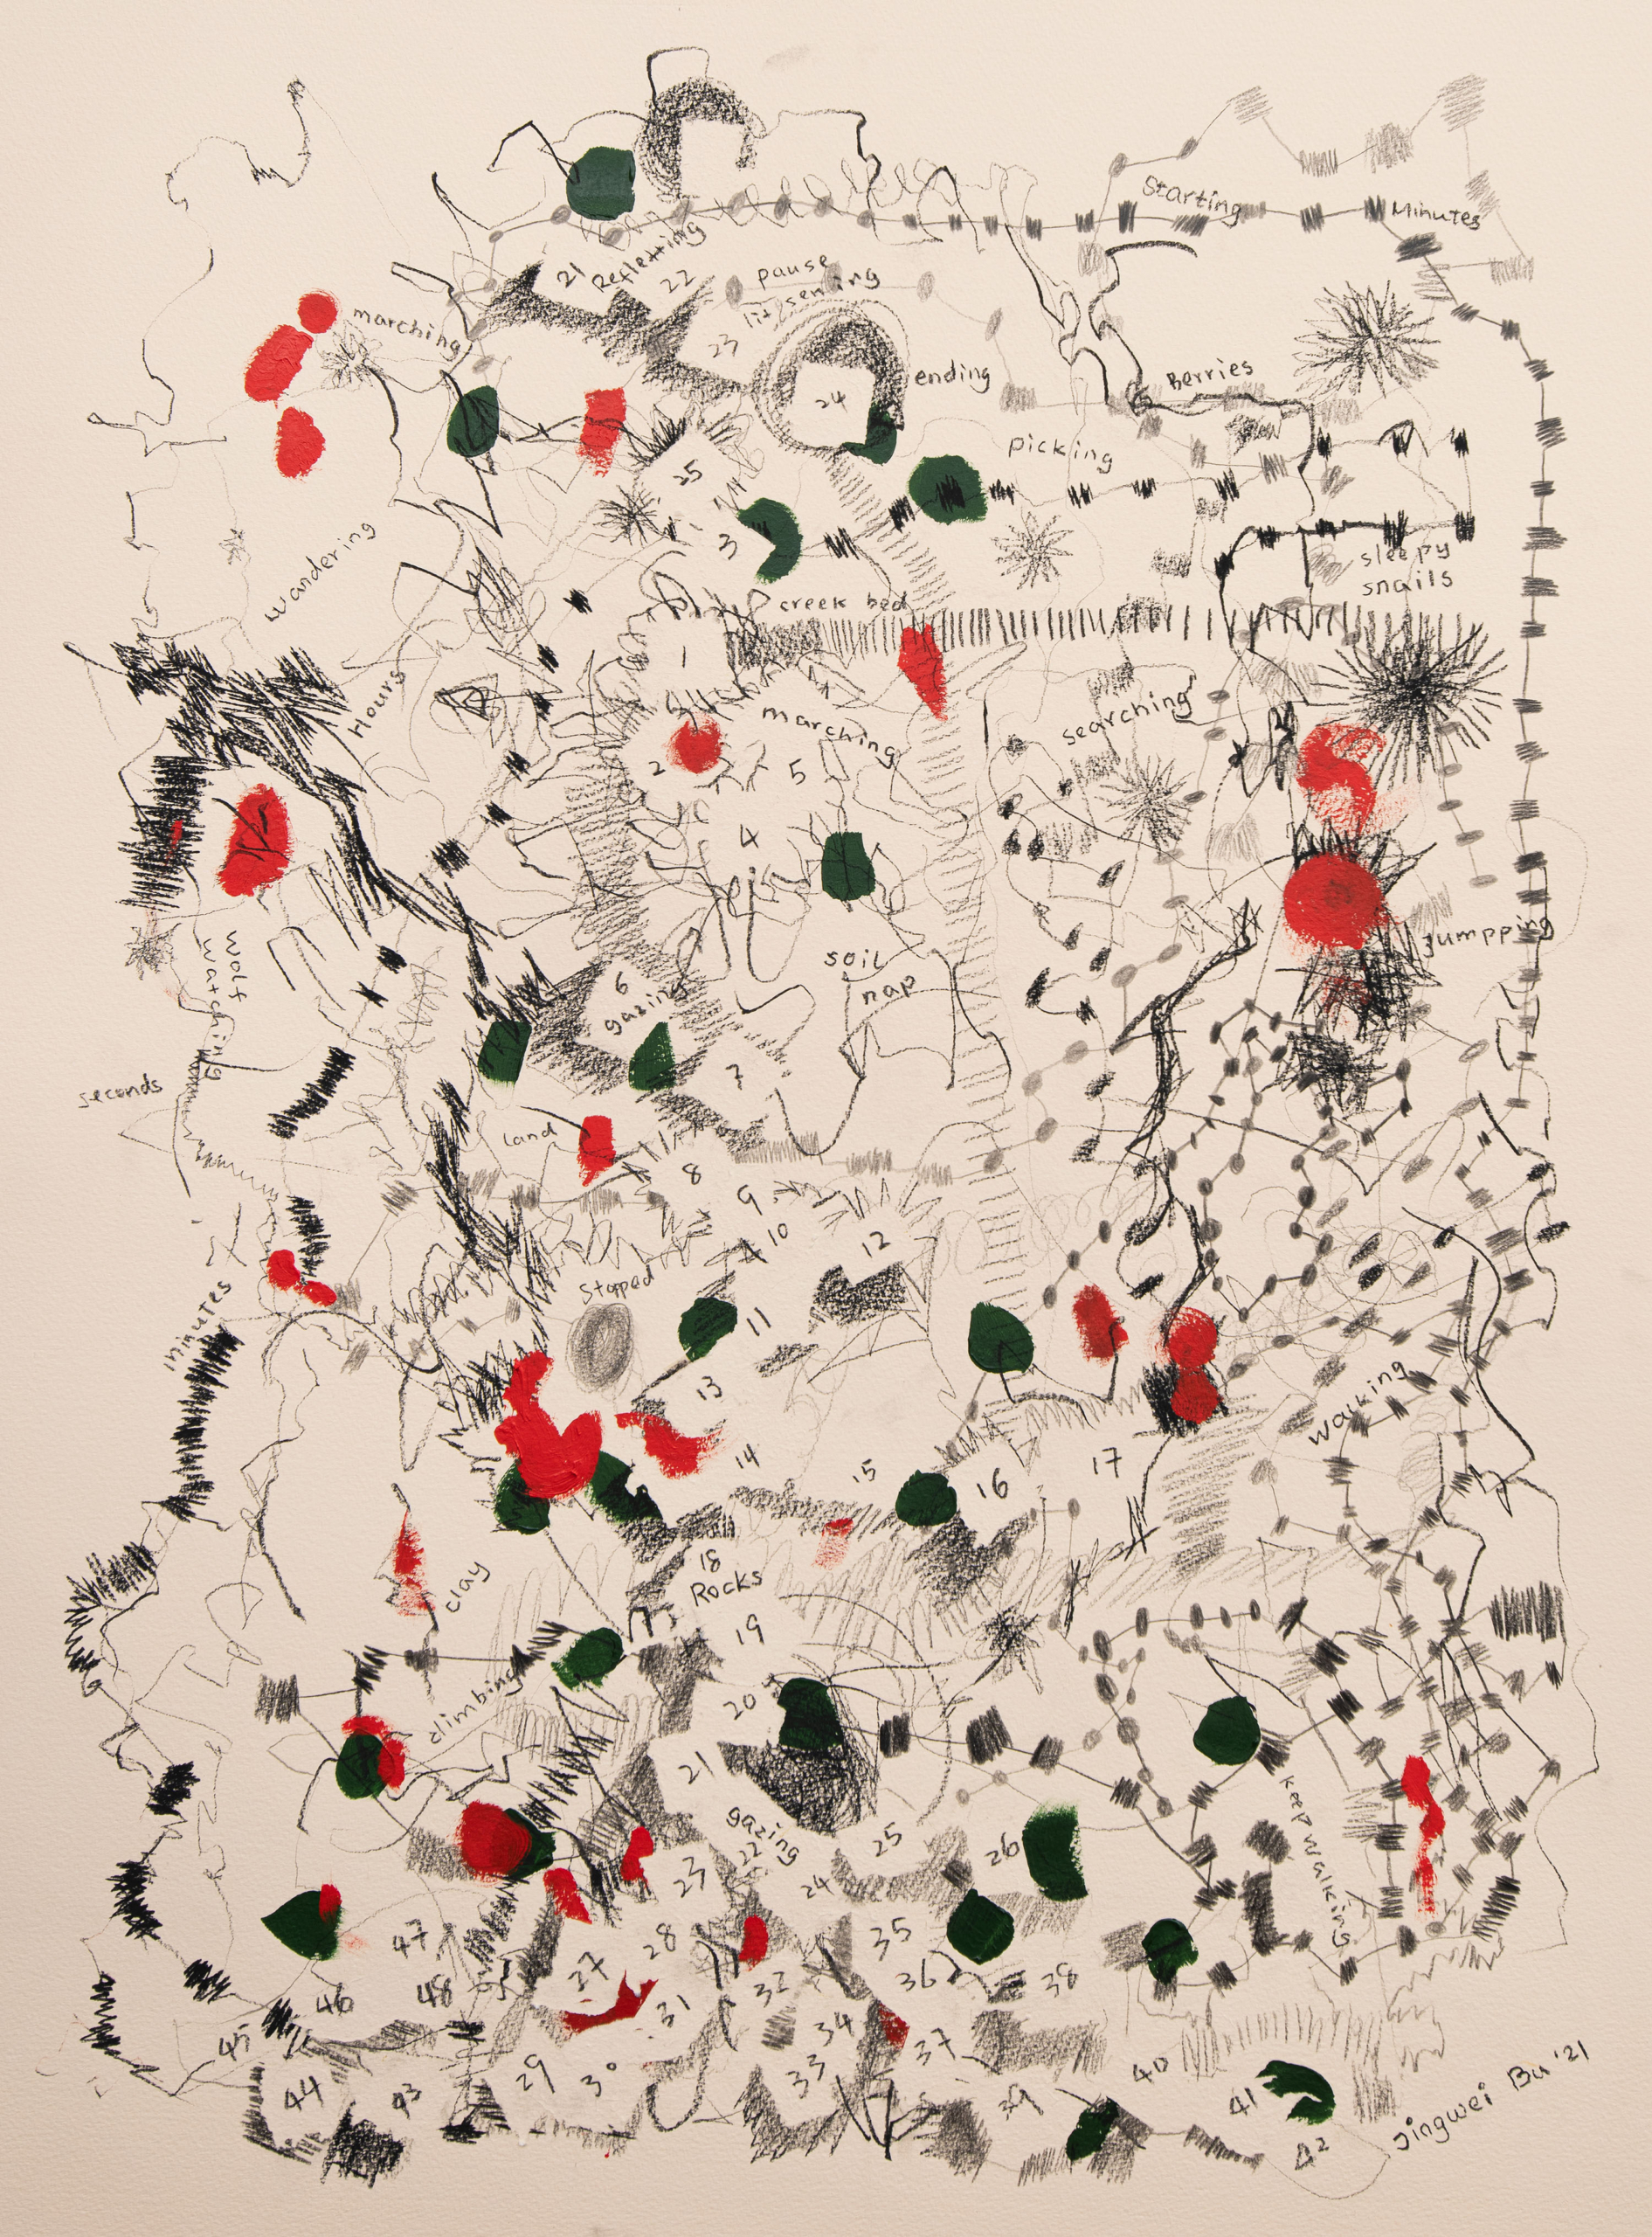 Life Maps – Wandering in Memories of 4 years Old Crossed the Creek Found Wild Berries Sleepy Nails, framed drawing by Jingwei Bu